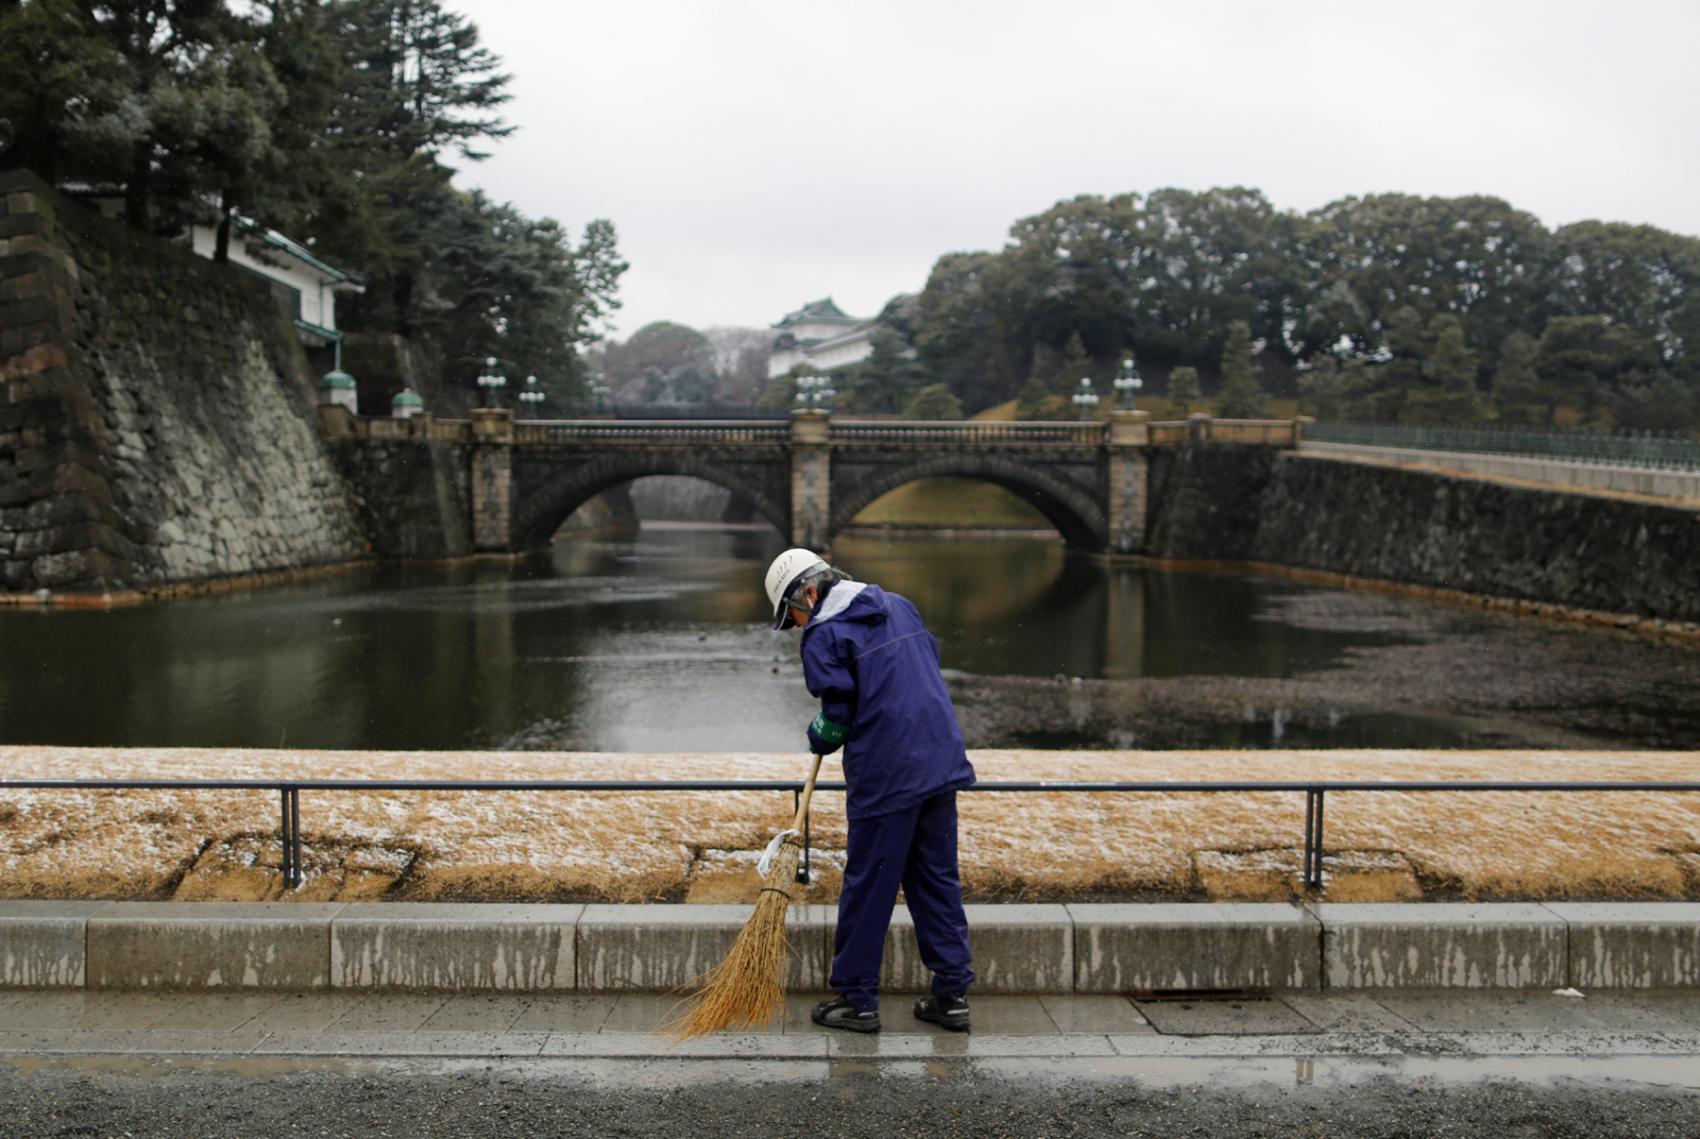 Tokyo turun salju hari ini serta cuaca ekstrim terjadi di Jepang